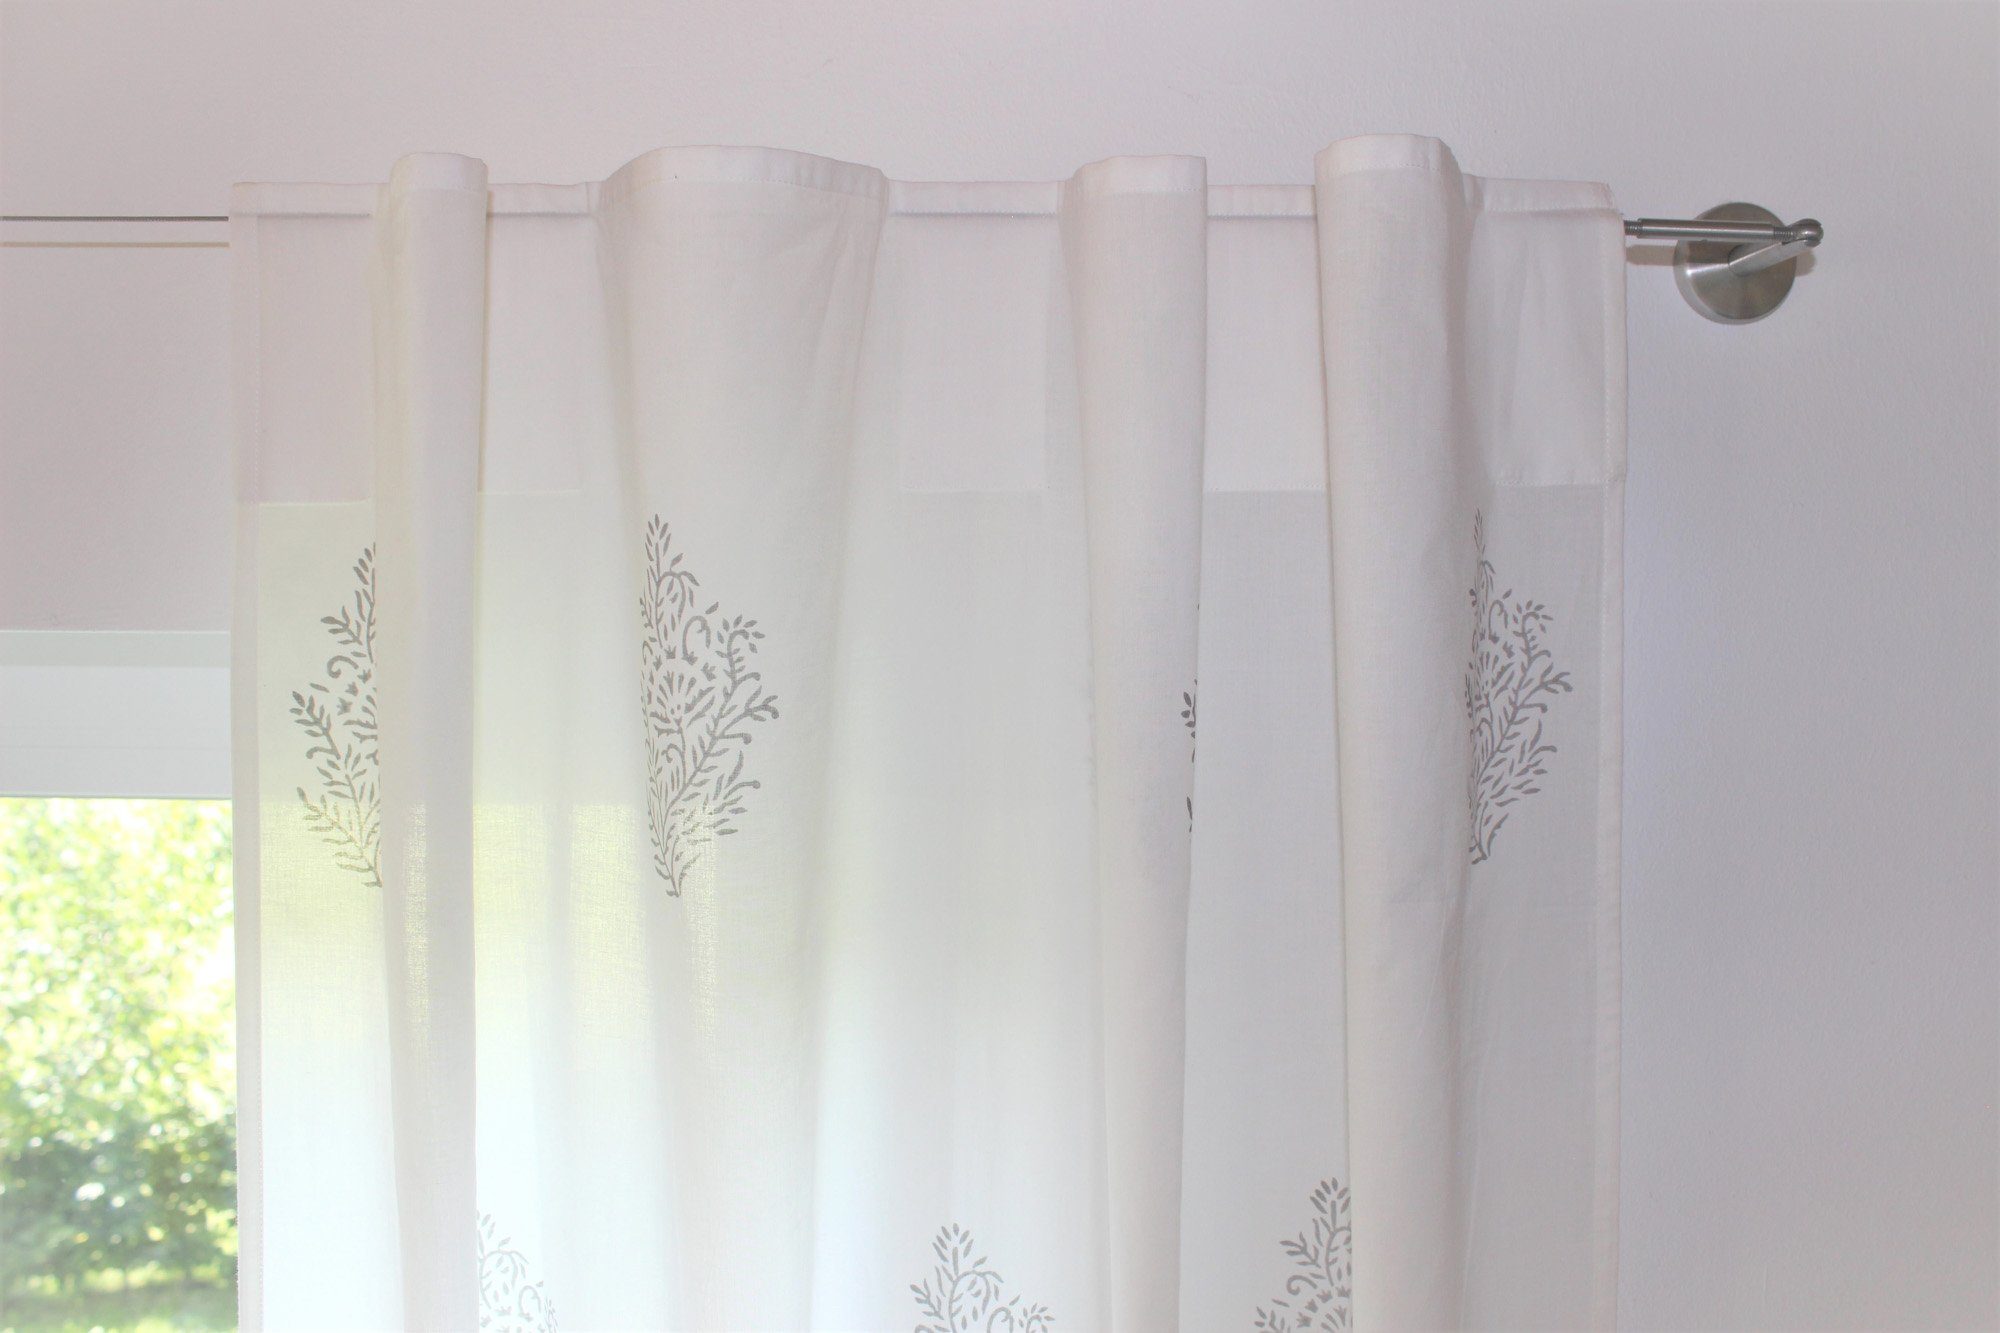 Indradanush, weiß Vorhang 100% pflegeleicht Muster, von indisches Vorhang grau Hand halbtransparent, Blockprint, verdeckteSchlaufen St), bedruckt, Baumwolle (1 blickdicht